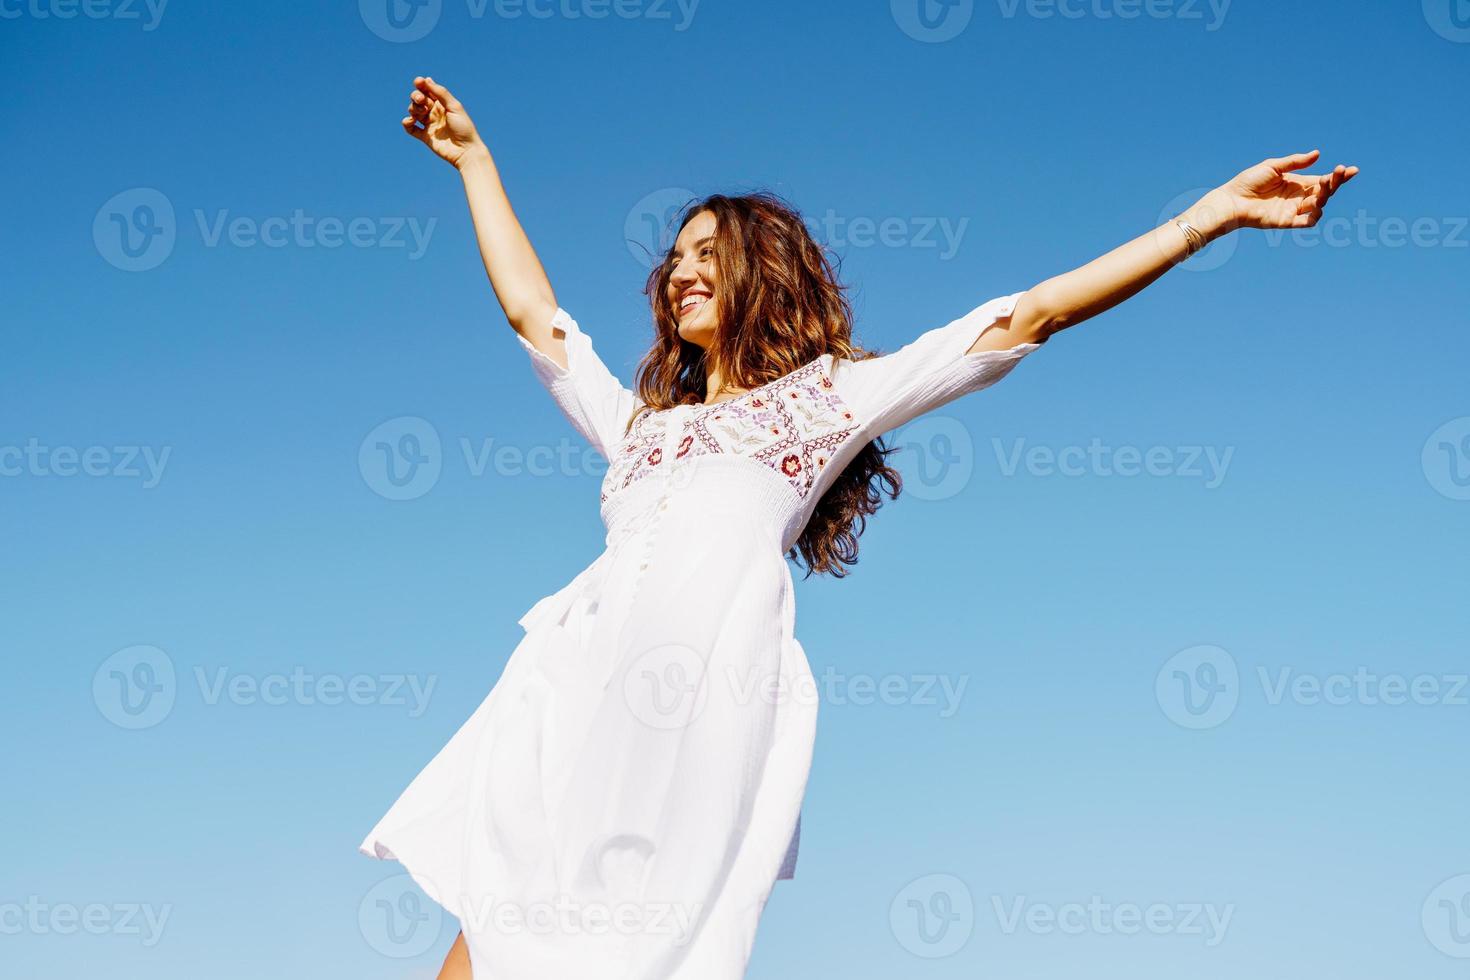 jeune femme levant les bras dans une belle robe blanche contre un ciel bleu photo